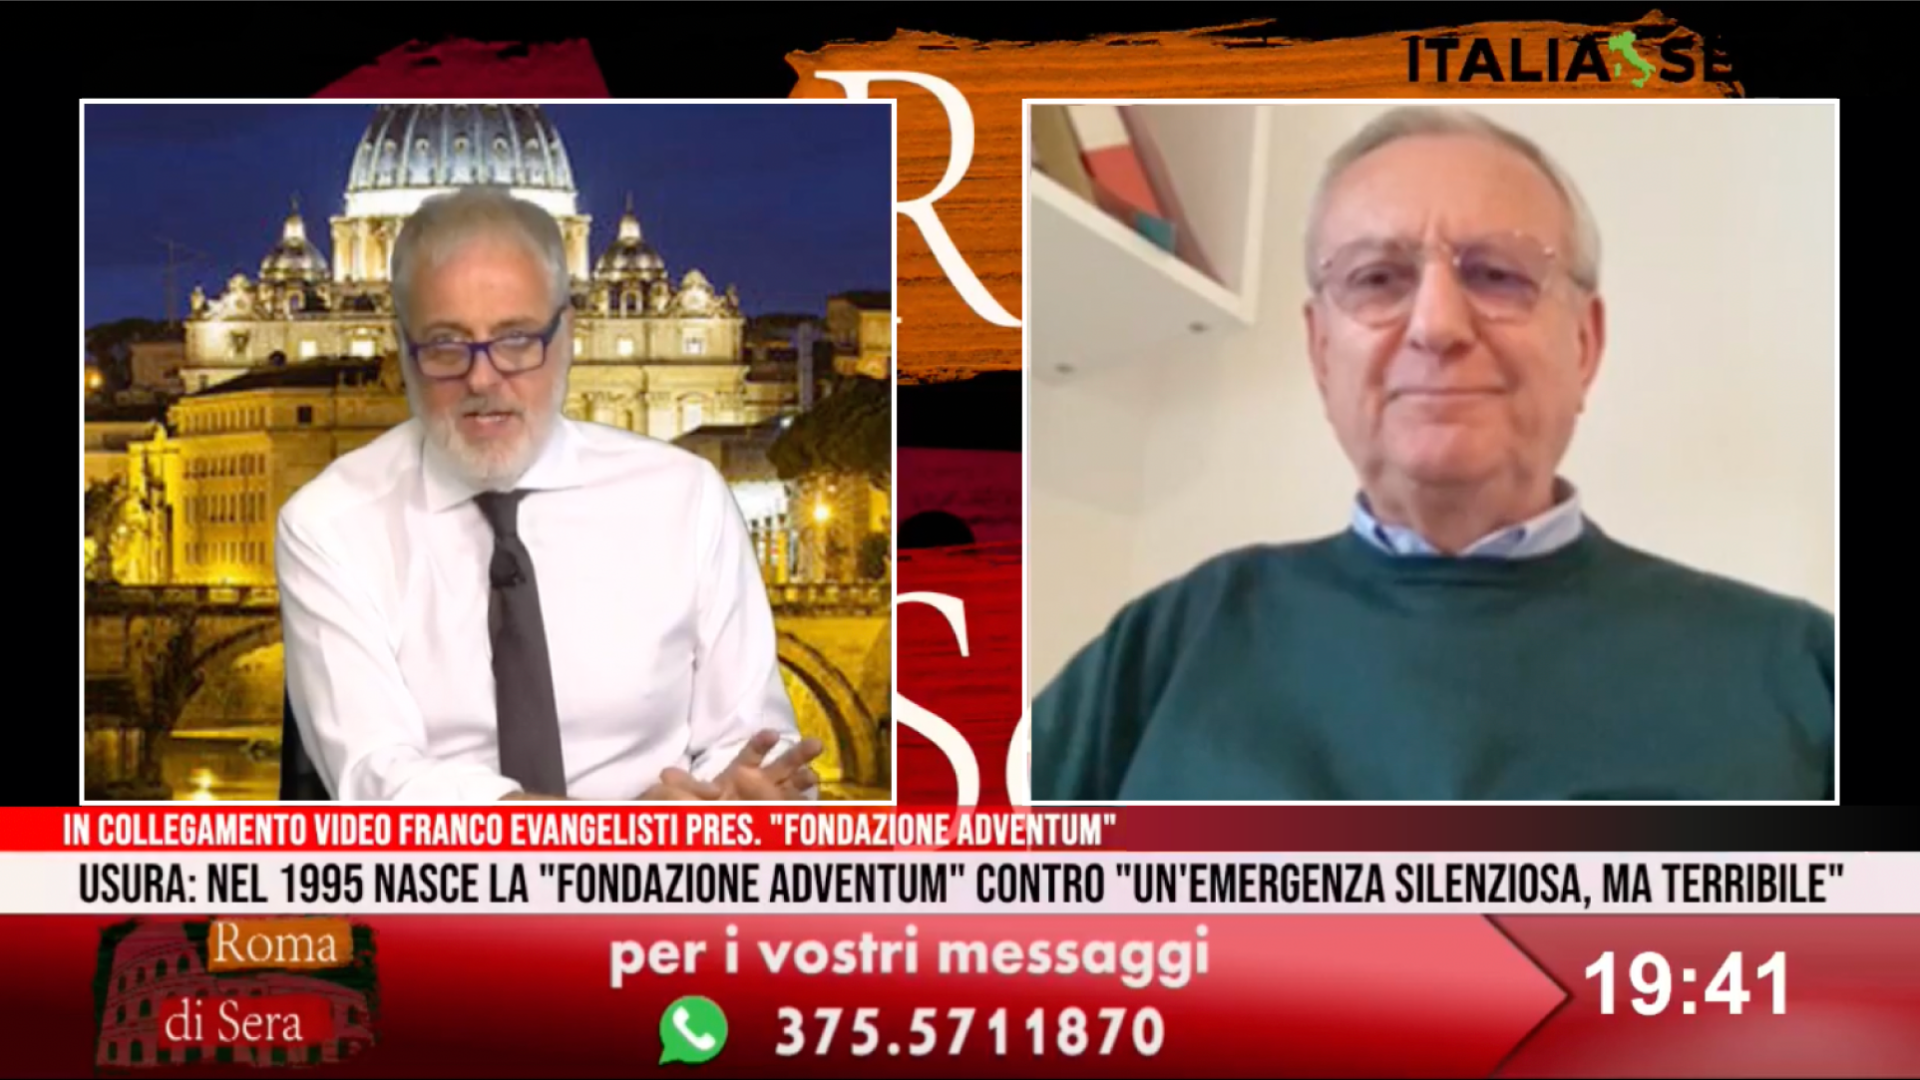 Intervento del presidente Franco Evangelisti al programma TV Roma di sera